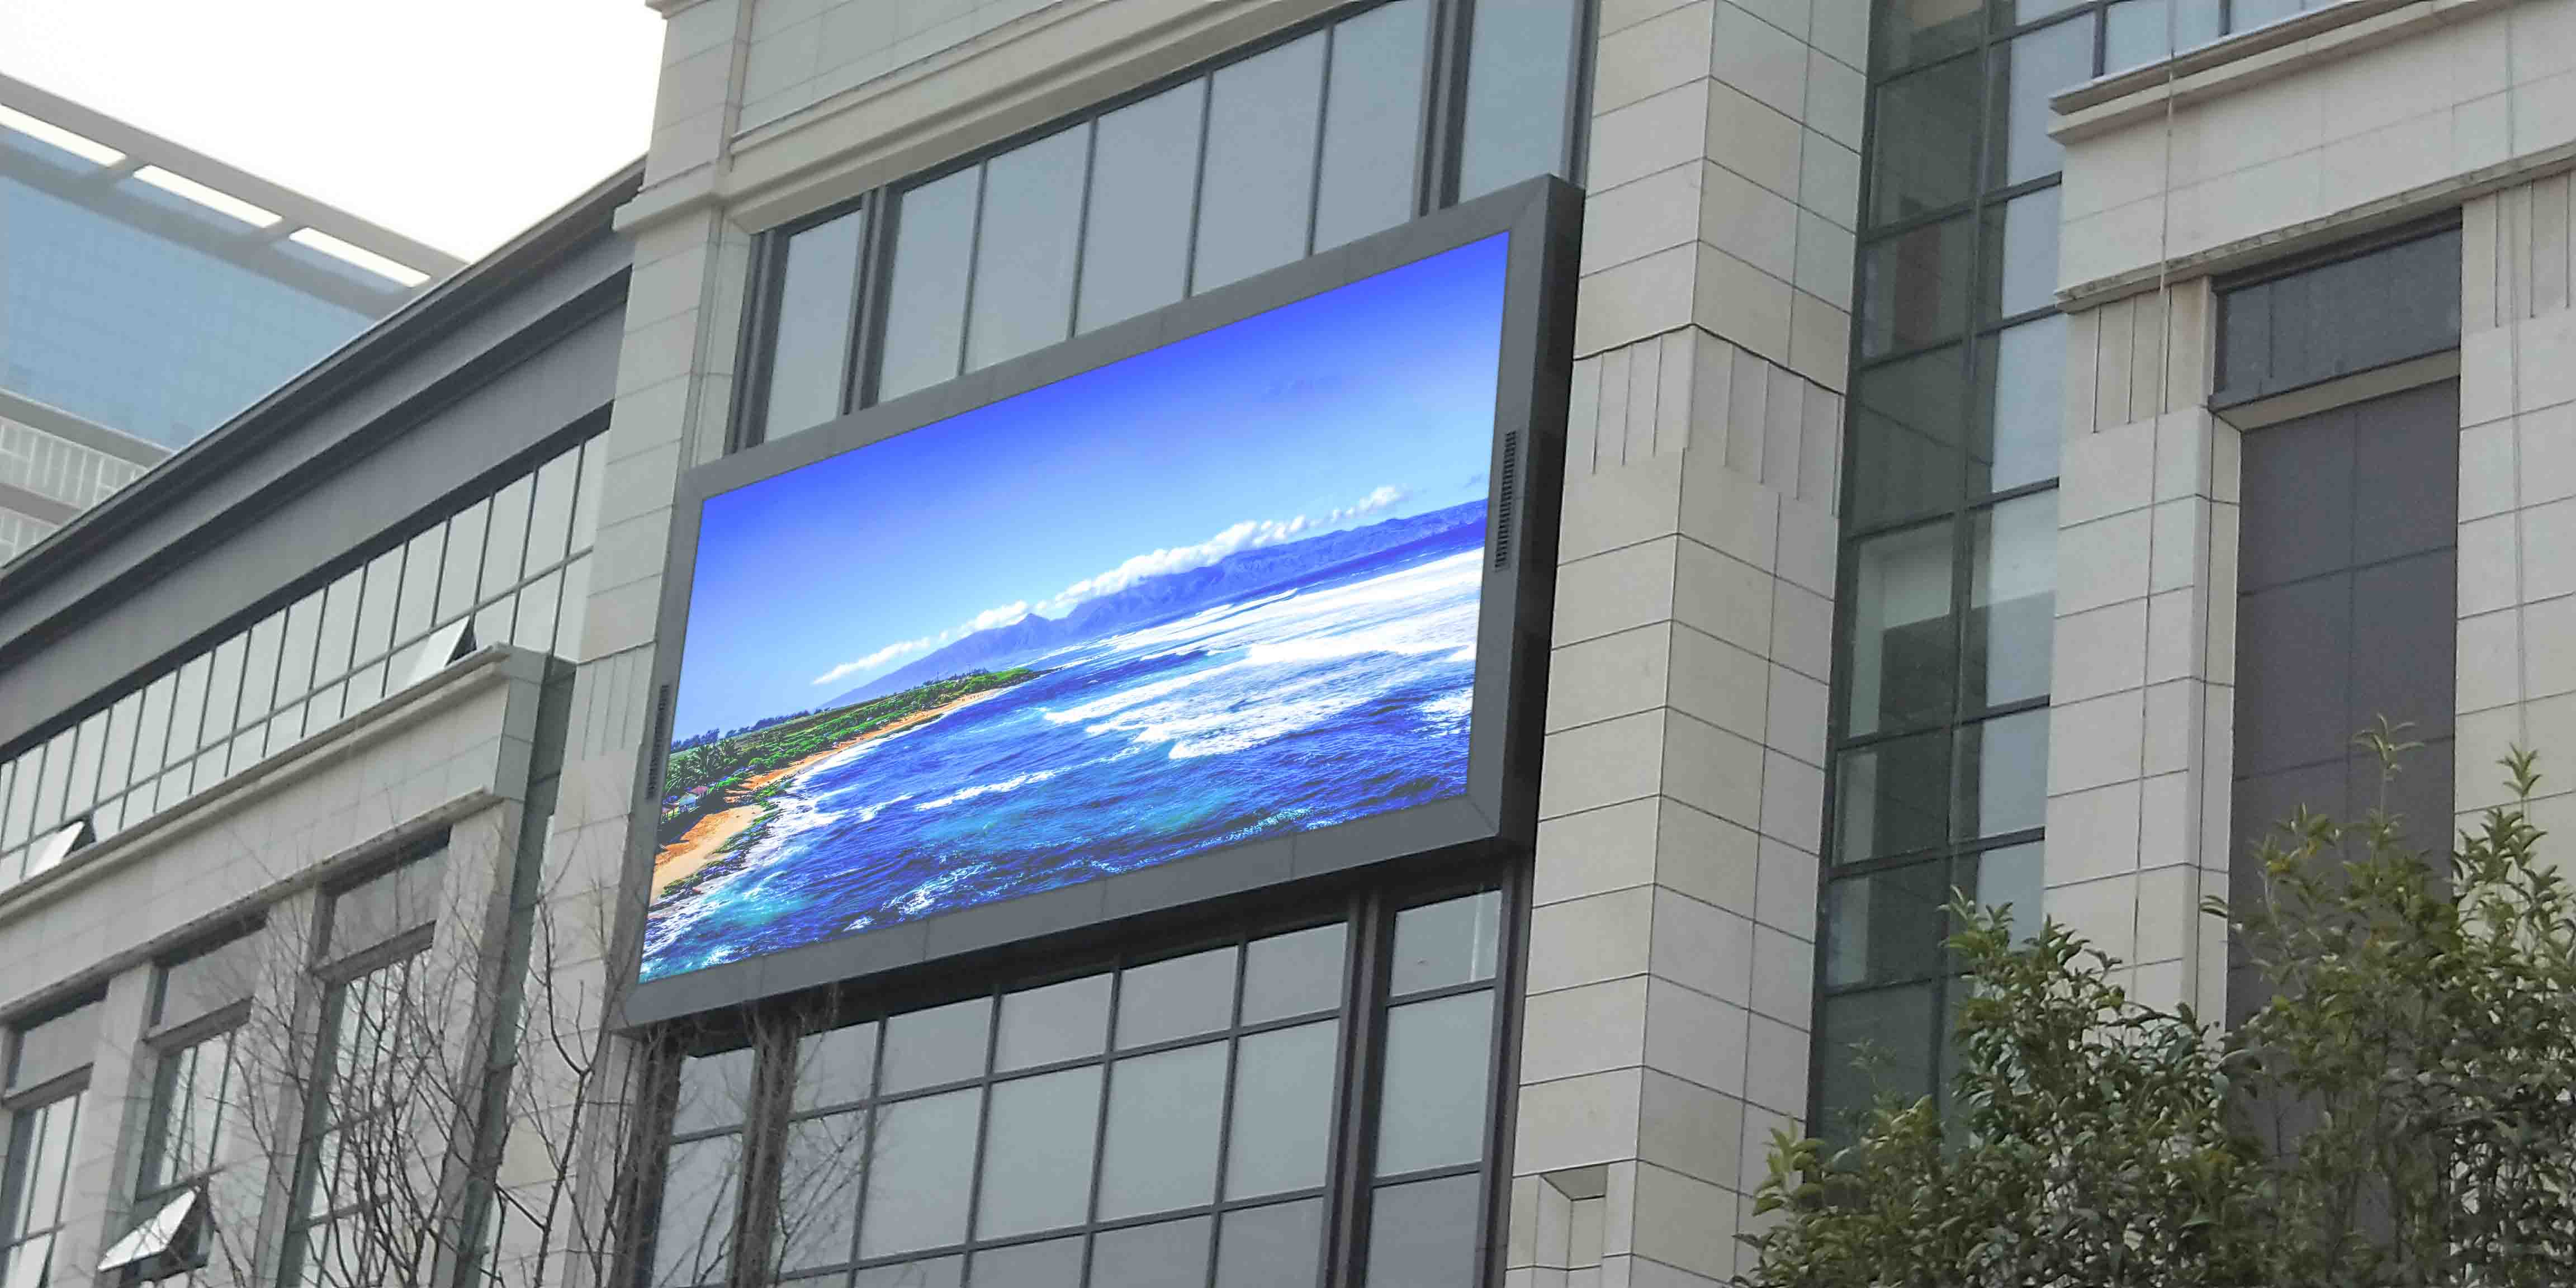 Real Estate Display Screen Project in Baoji,China